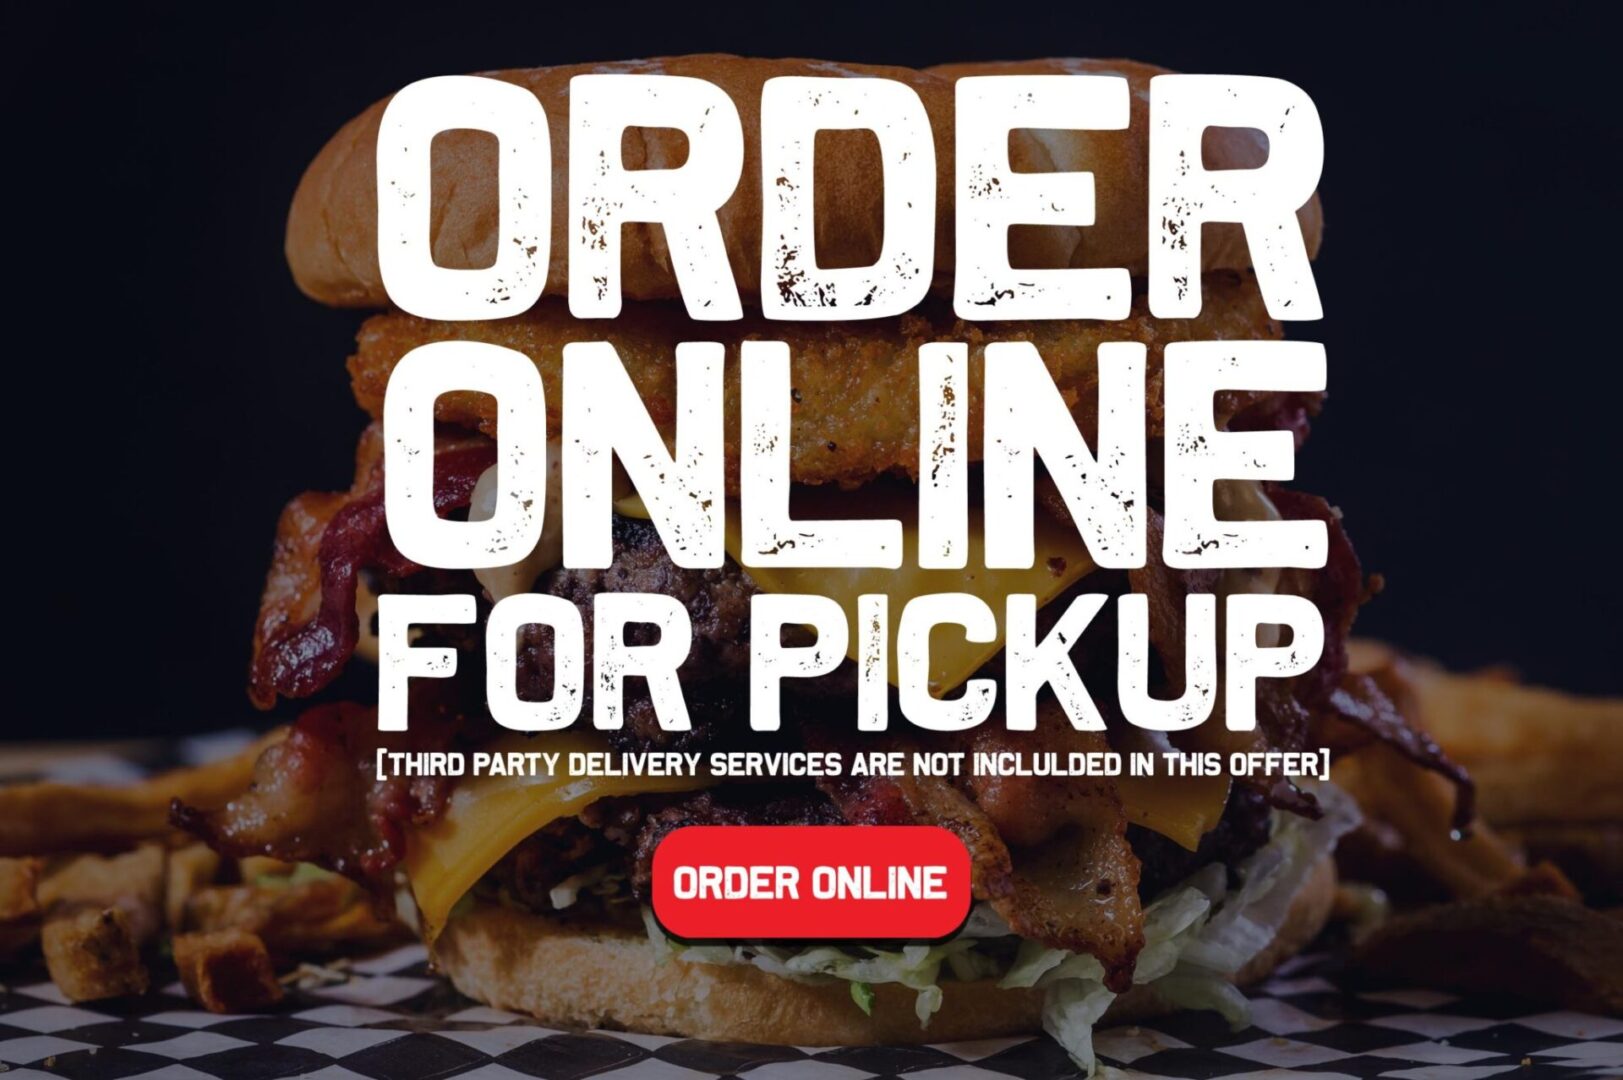 A burger king order online for pickup